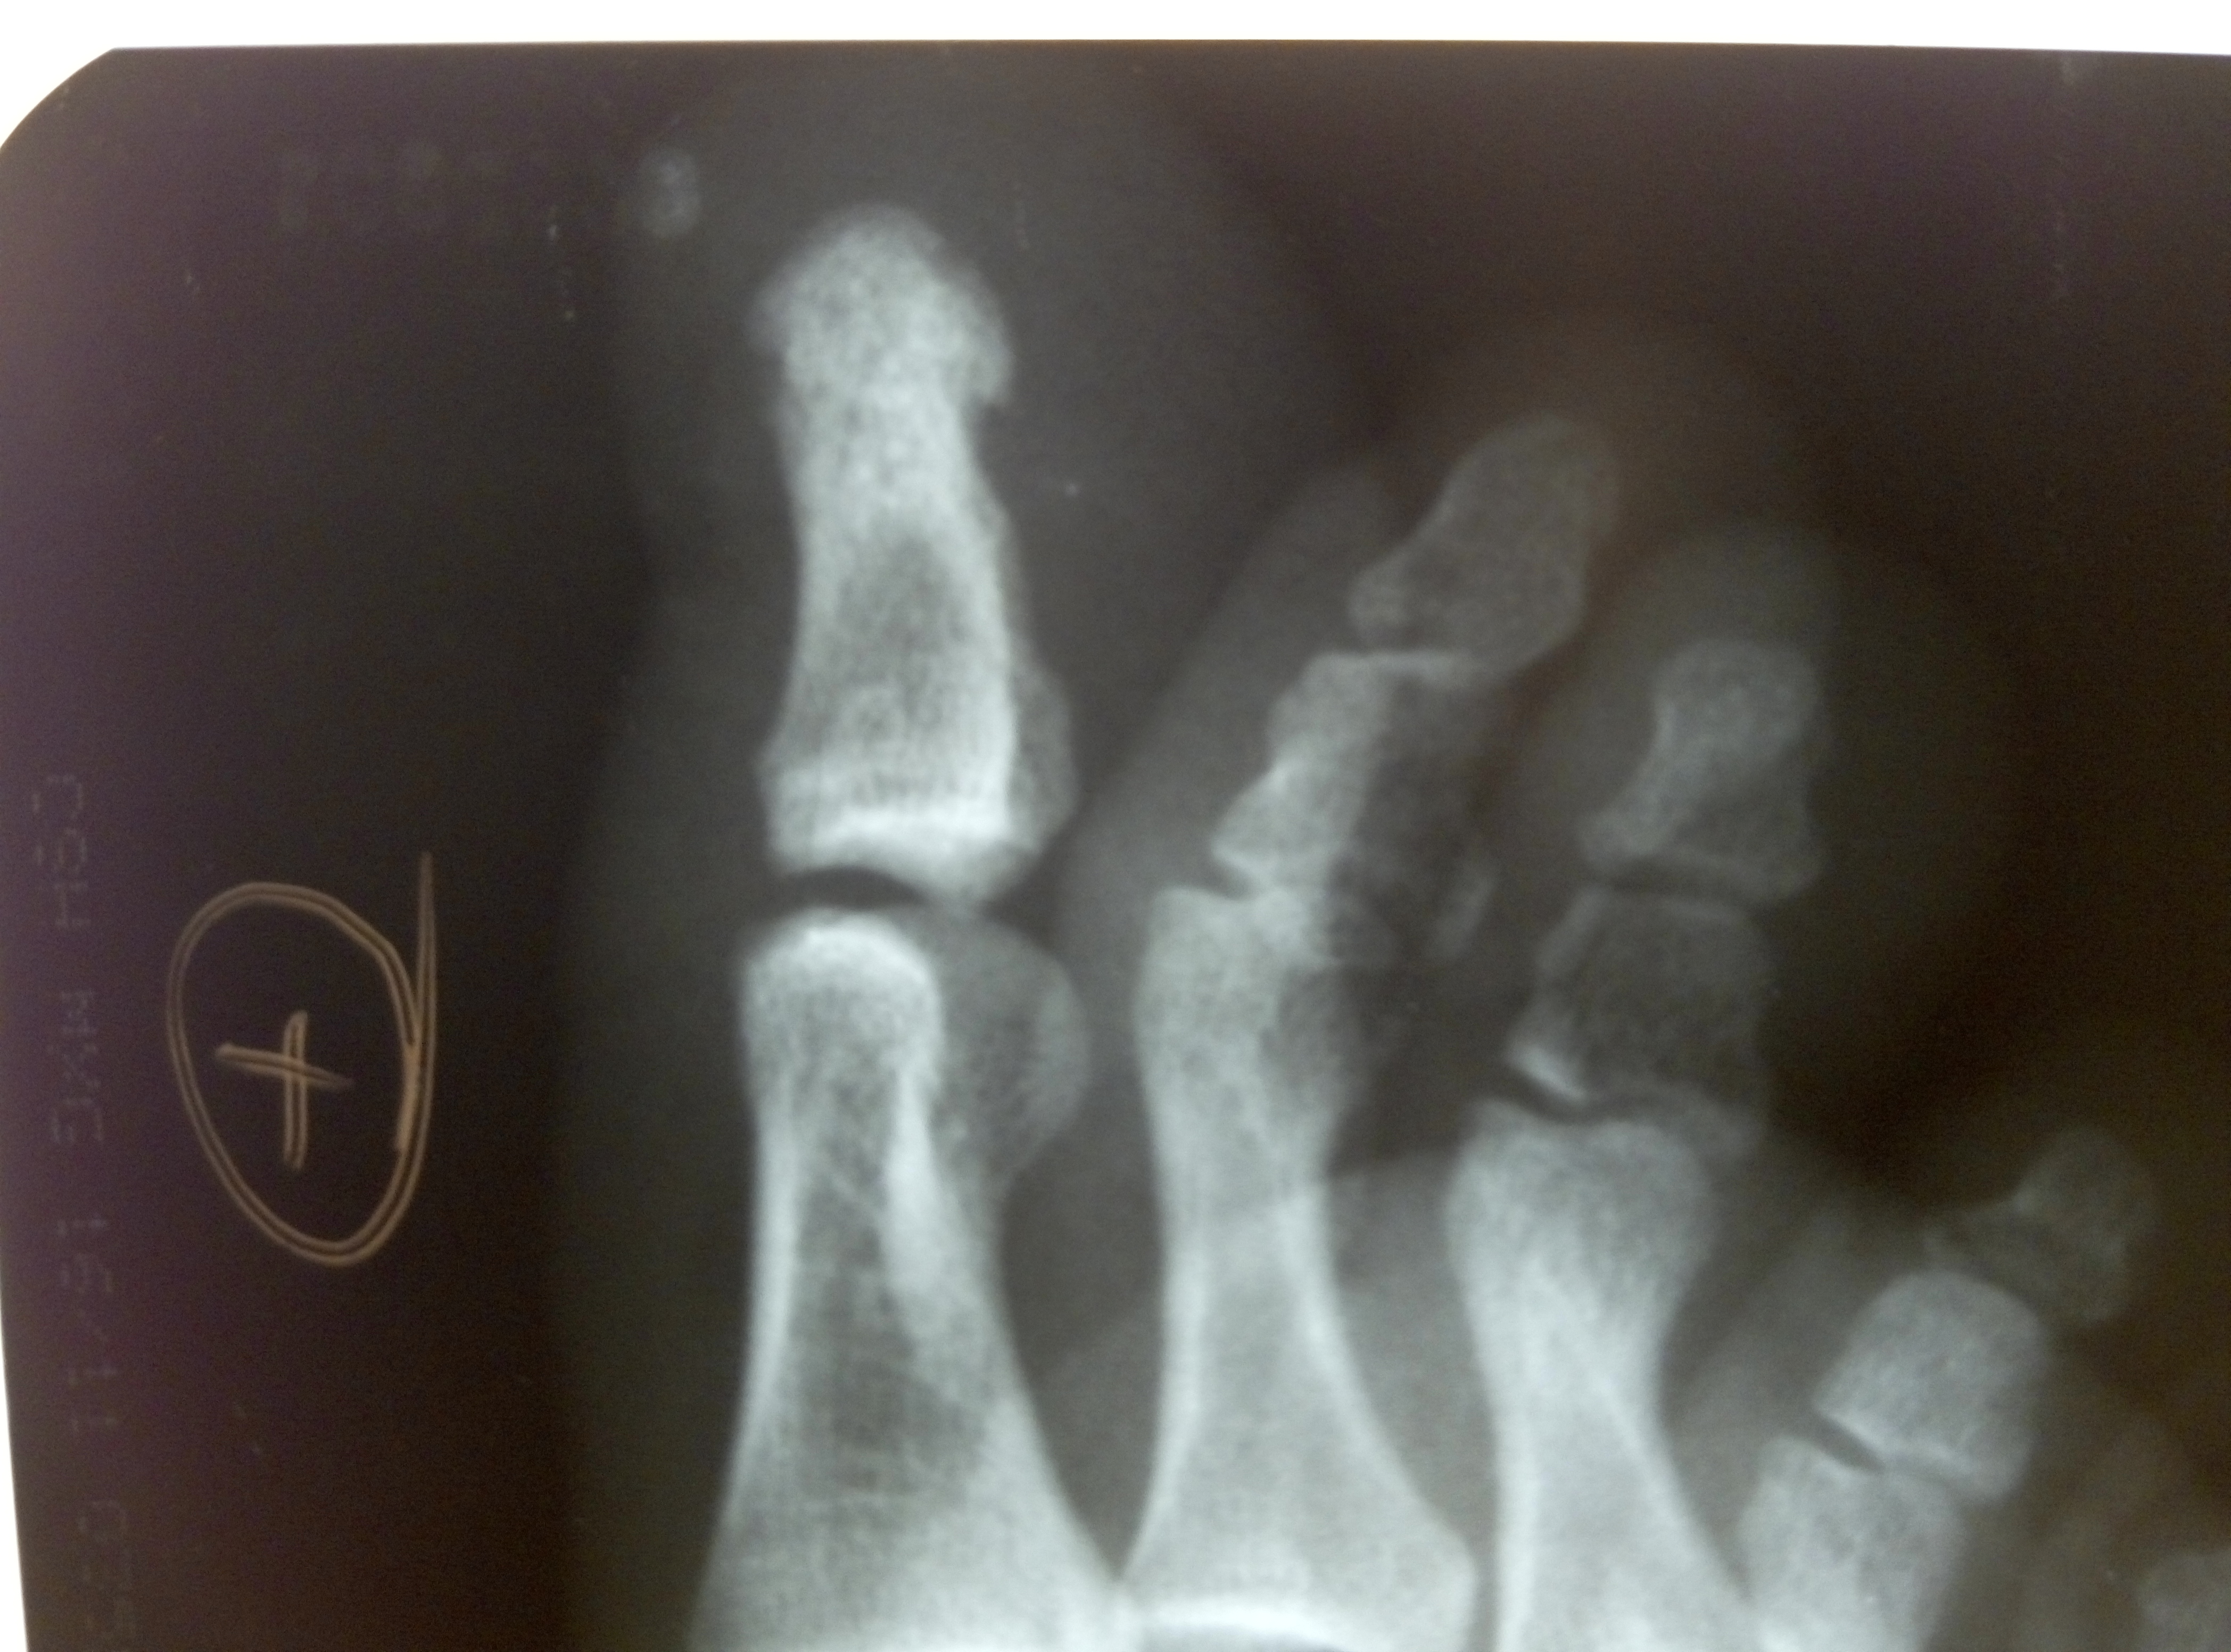 Ногтевая фаланга стопы. Остеомиелит пальца рентген. Остеомиелит фаланги большого пальца стопы рентген. Остеомиелит фаланг стопы рентген. Остеомиелит фаланги рентген.